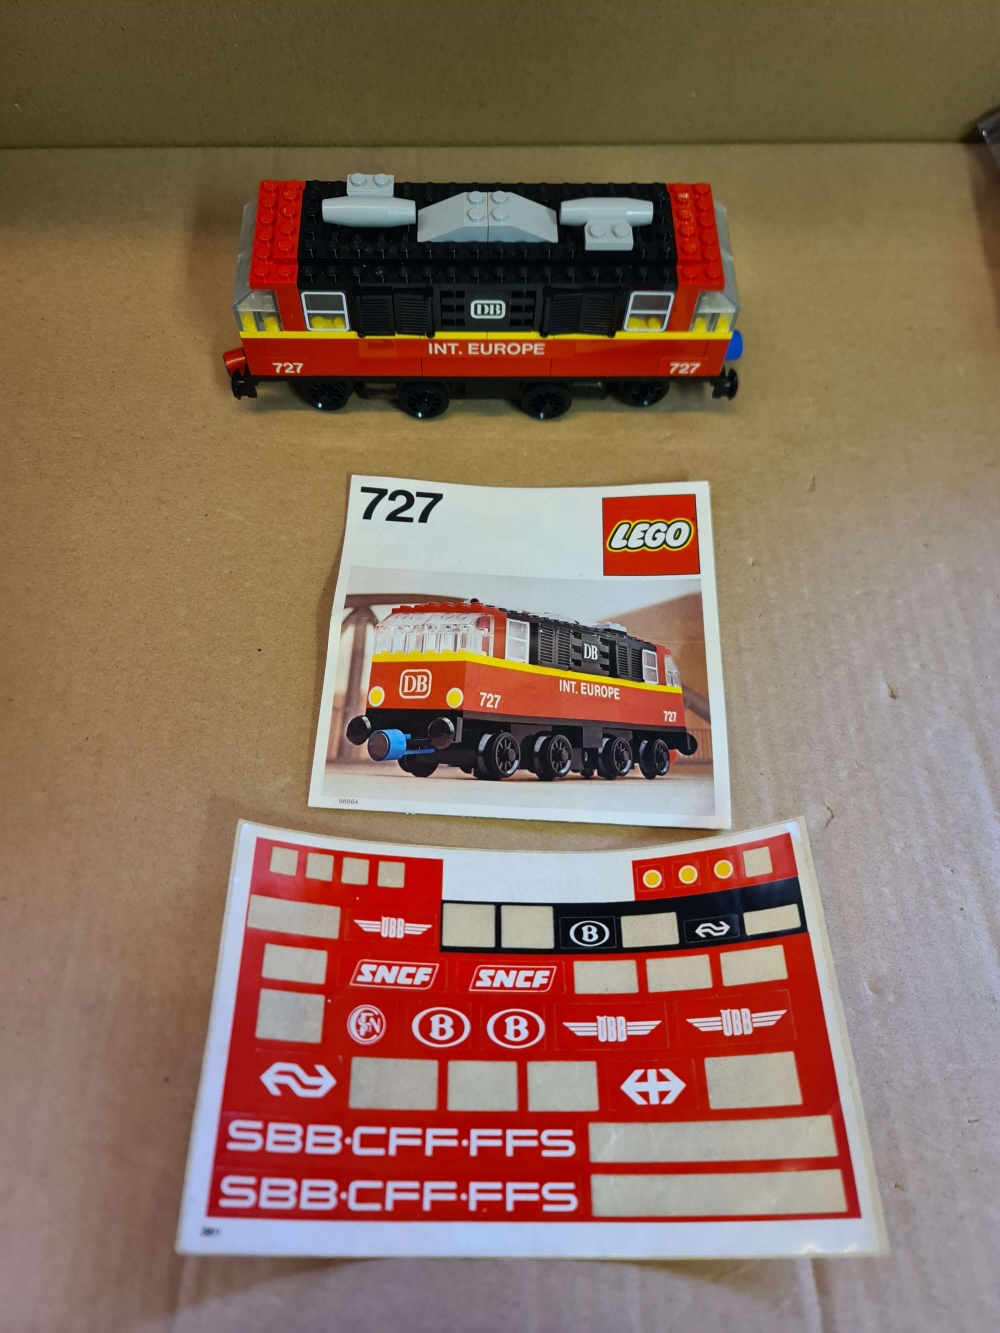 Sett 727 fra Lego Trains : 12v serien.

Nydelig sett. Ser nesten ubrukt ut. Kun originale brikker. Perfekte klistremerker. 
Komplett.